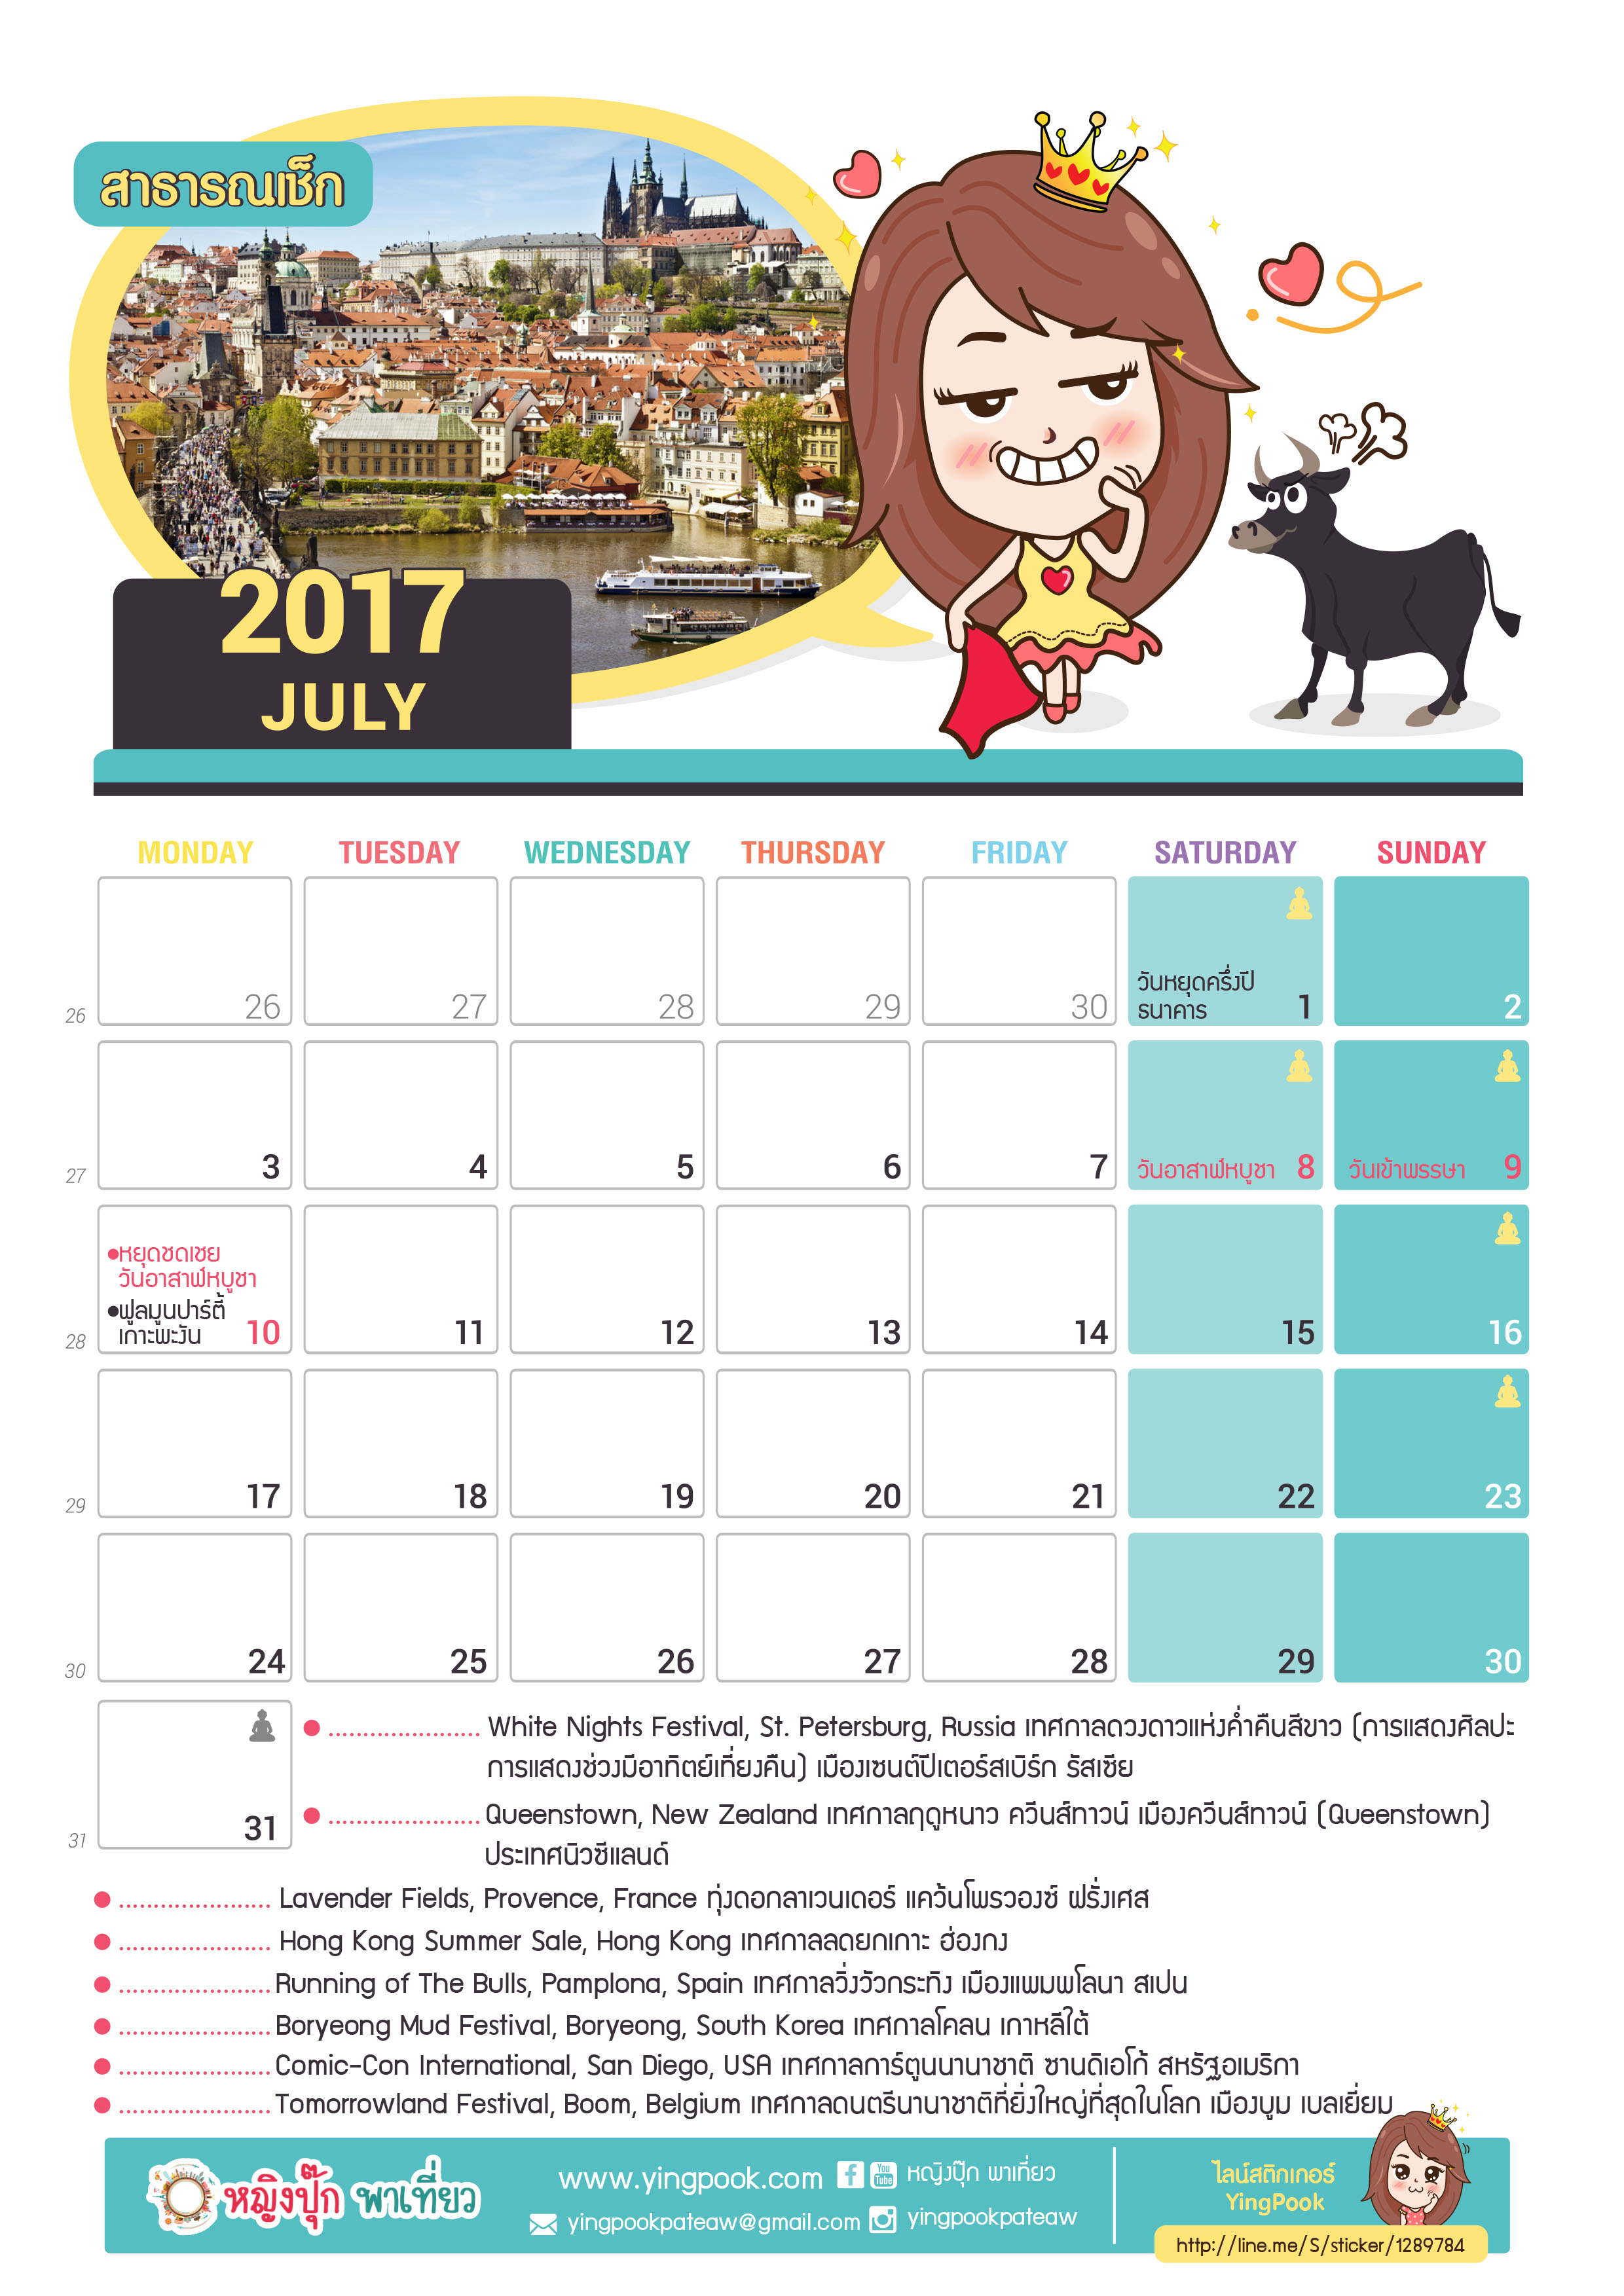 03_Ying pook_Calendar 2017_July - Sep